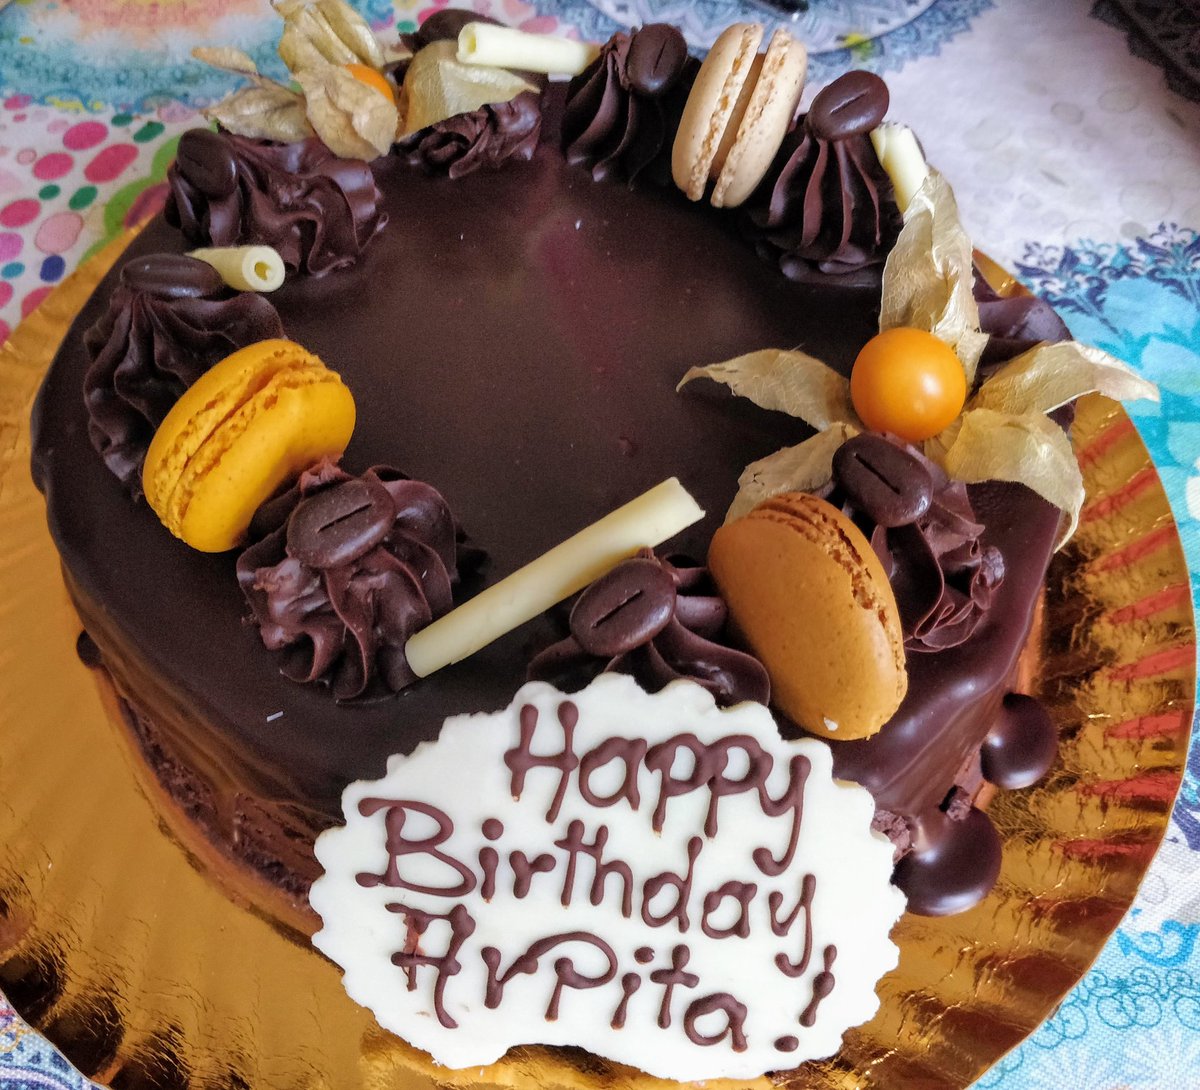 Arpitha Happy Birthday Cakes Pics Gallery